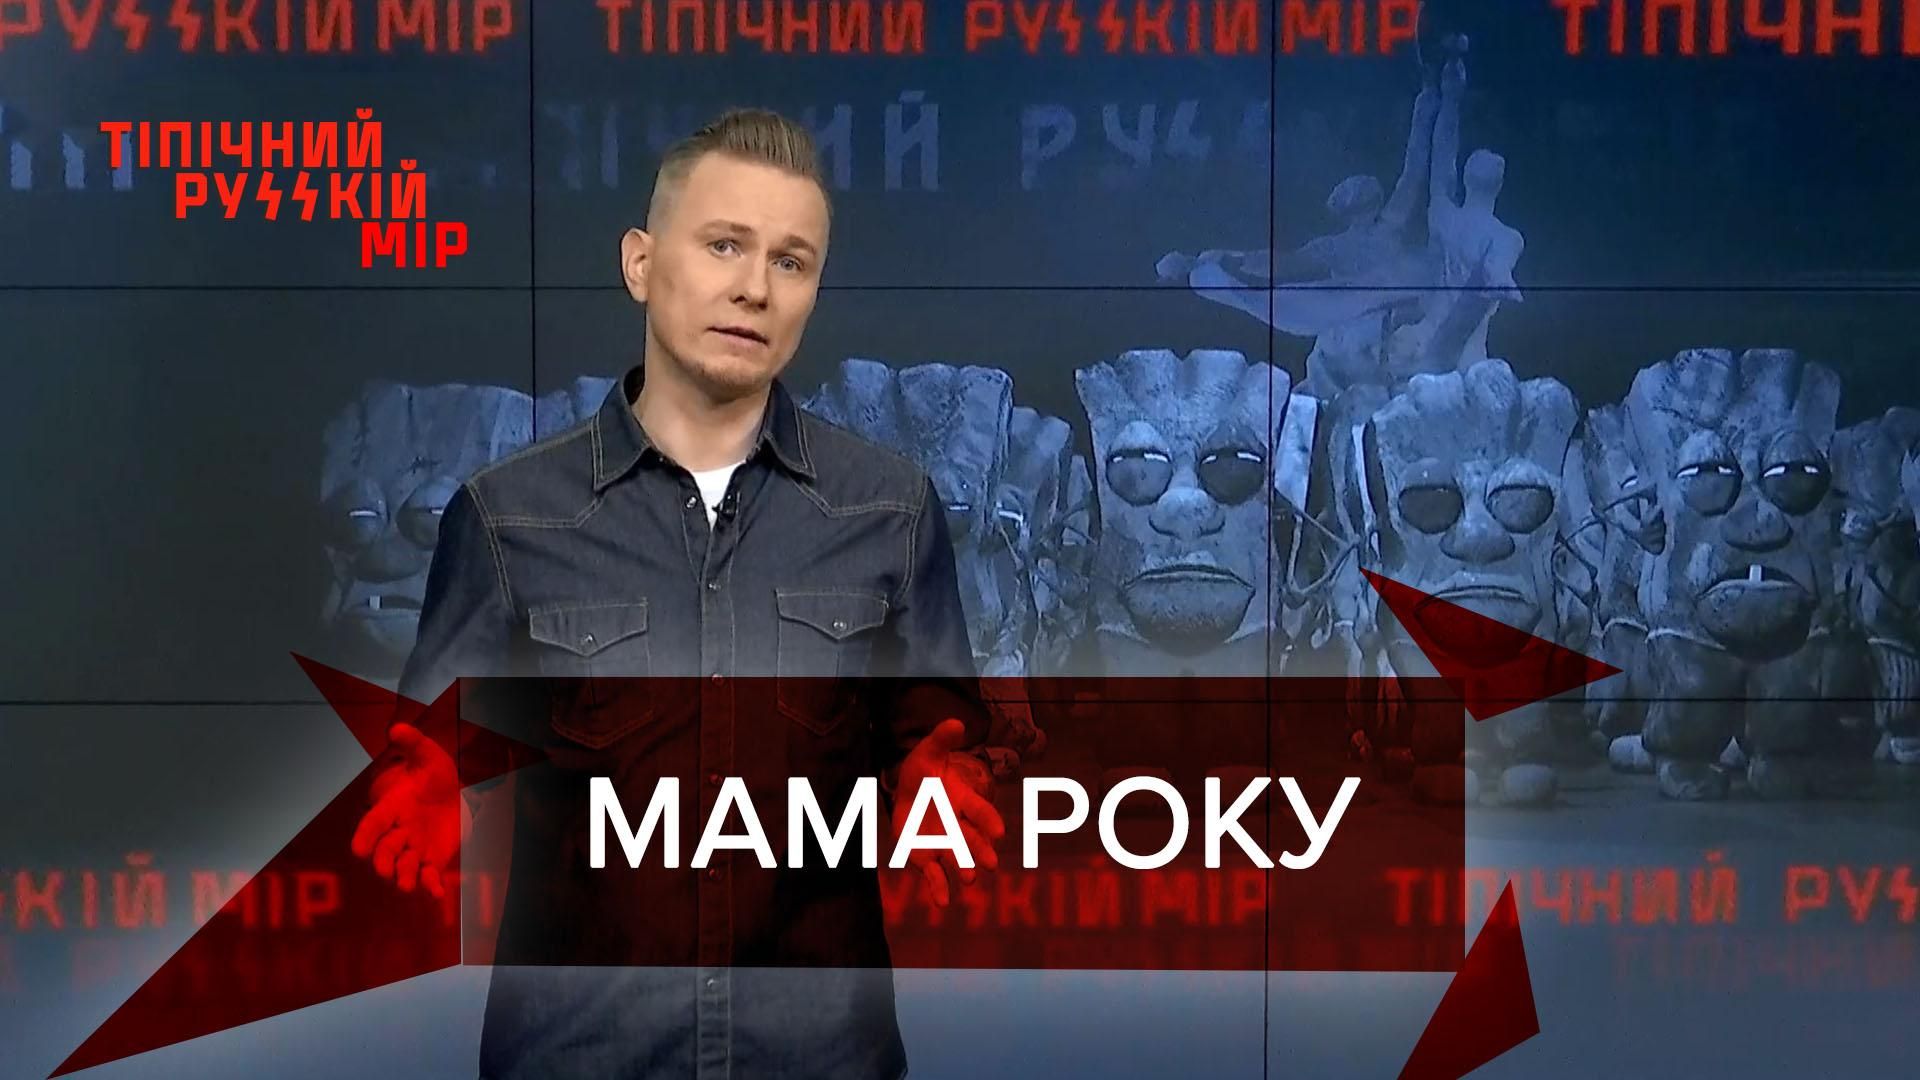 Типичный русский мир: В России мама насильно погрузила ребенка в прорубь